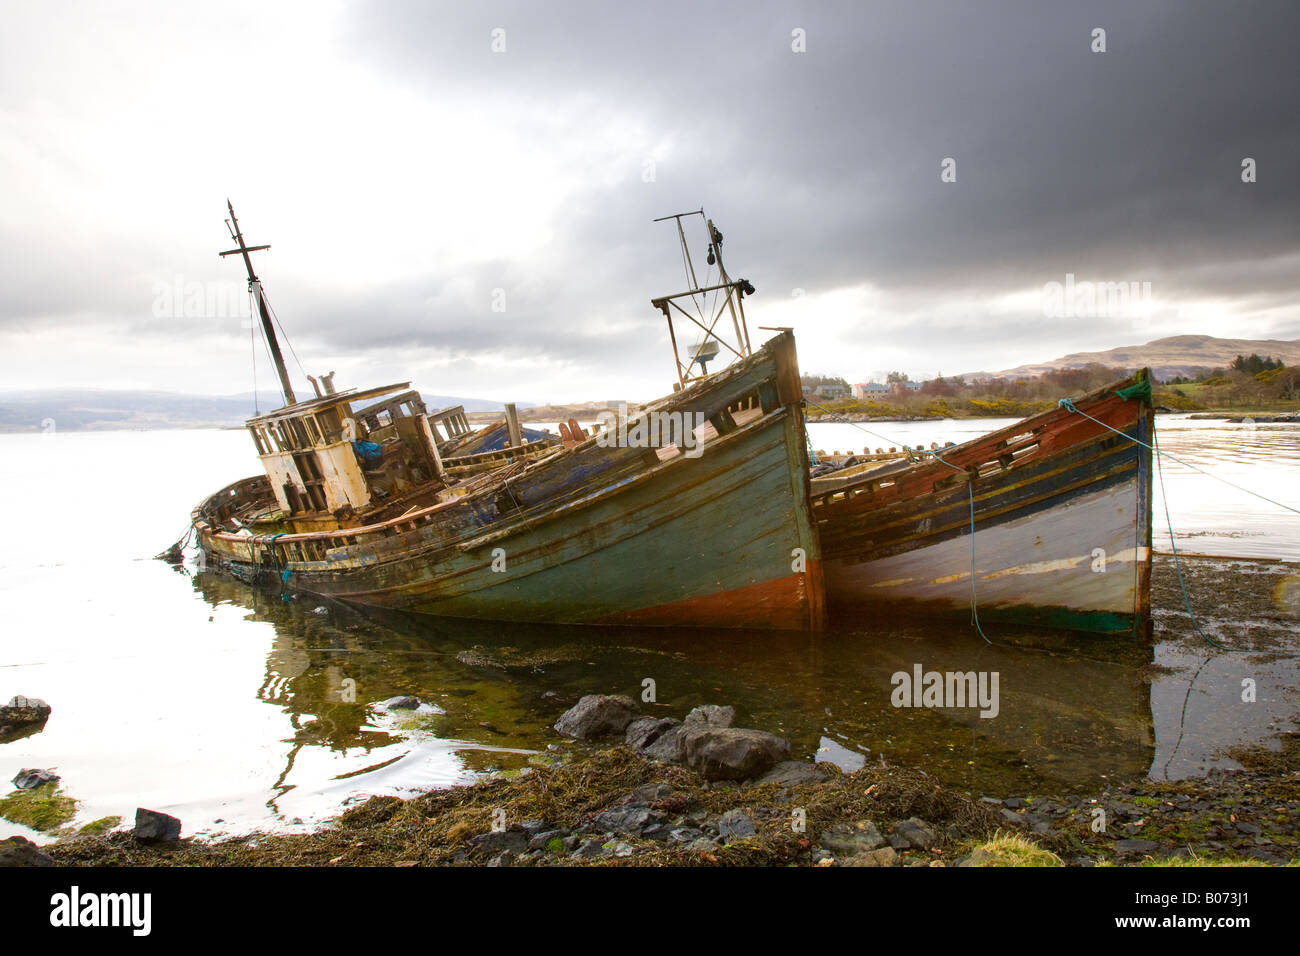 Deux vieux bateaux de pêche en bois sur la plage de Salen, île de Mull, Argyll, Écosse, Royaume-Uni, Ont été détruits et Abandonnés Banque D'Images